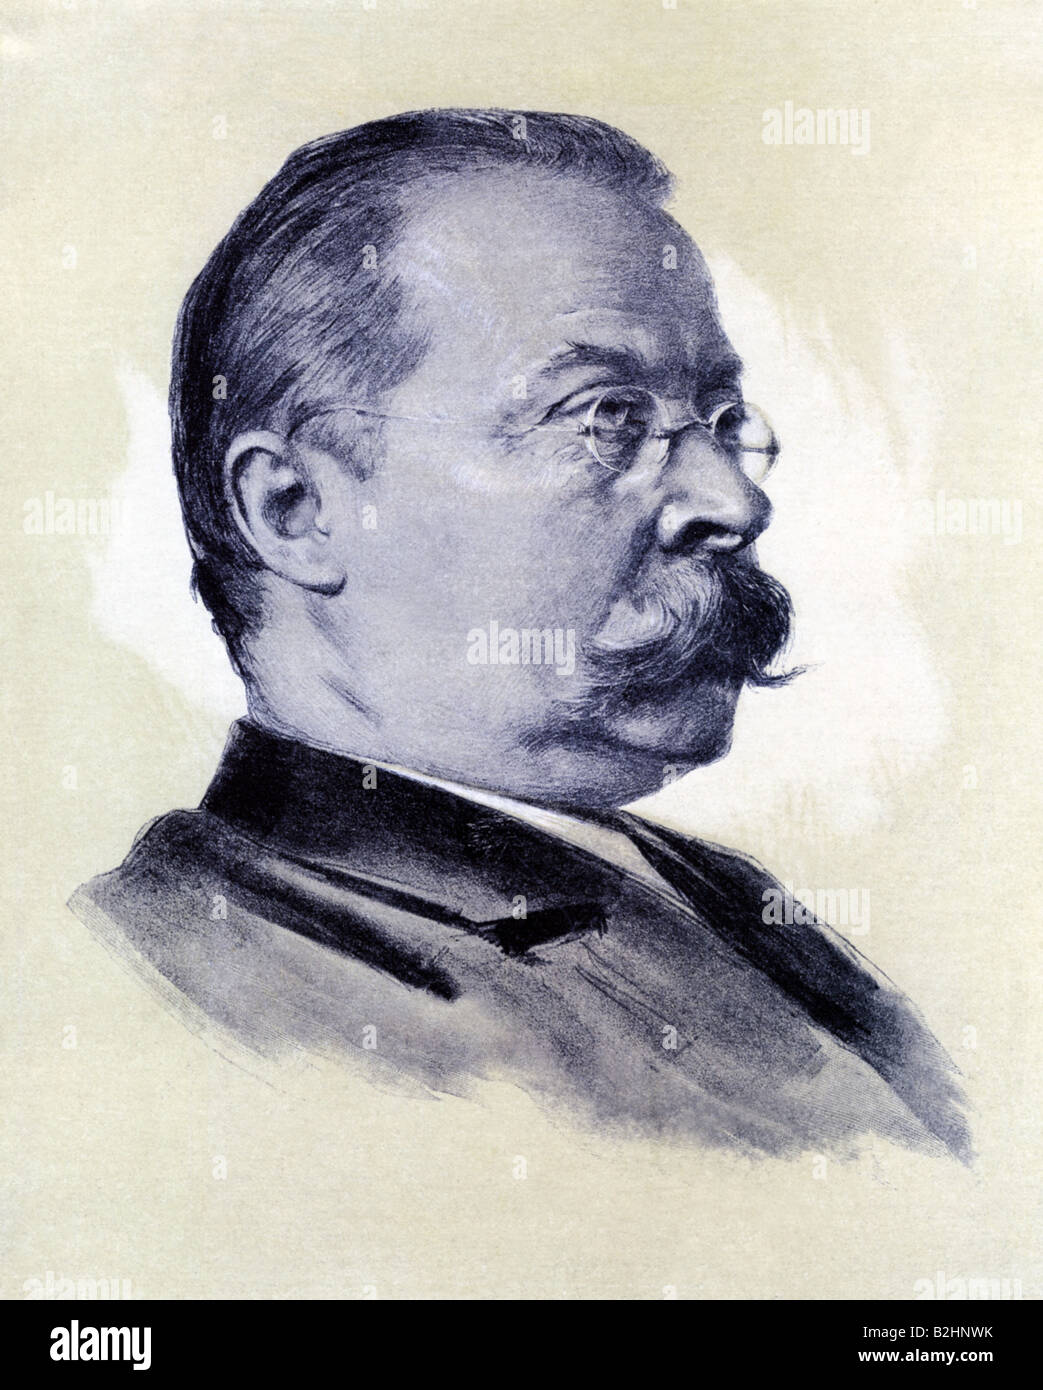 Wildenbruch, Ernst von, 3.2.1845 - 15.1.1909, German author / writer, portrait, after lithograph by Hanns Fechner, 20th century, Stock Photo